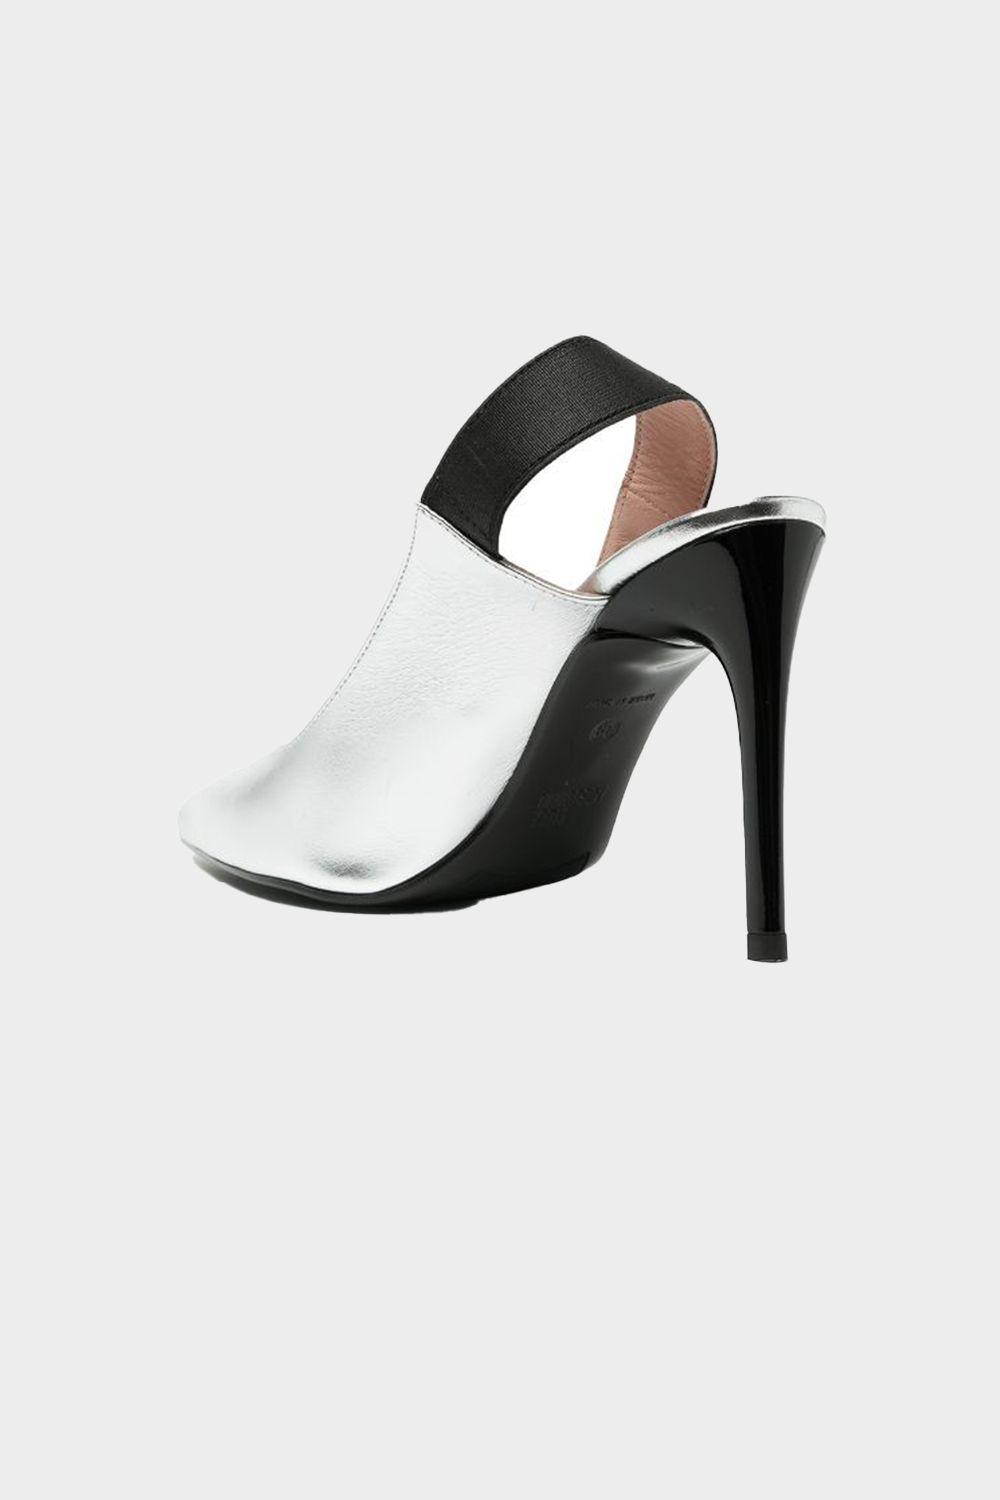 נעלי עקב לנשים בצבע כסוף MOSCHINO MOSCHINO Vendome online | ונדום .